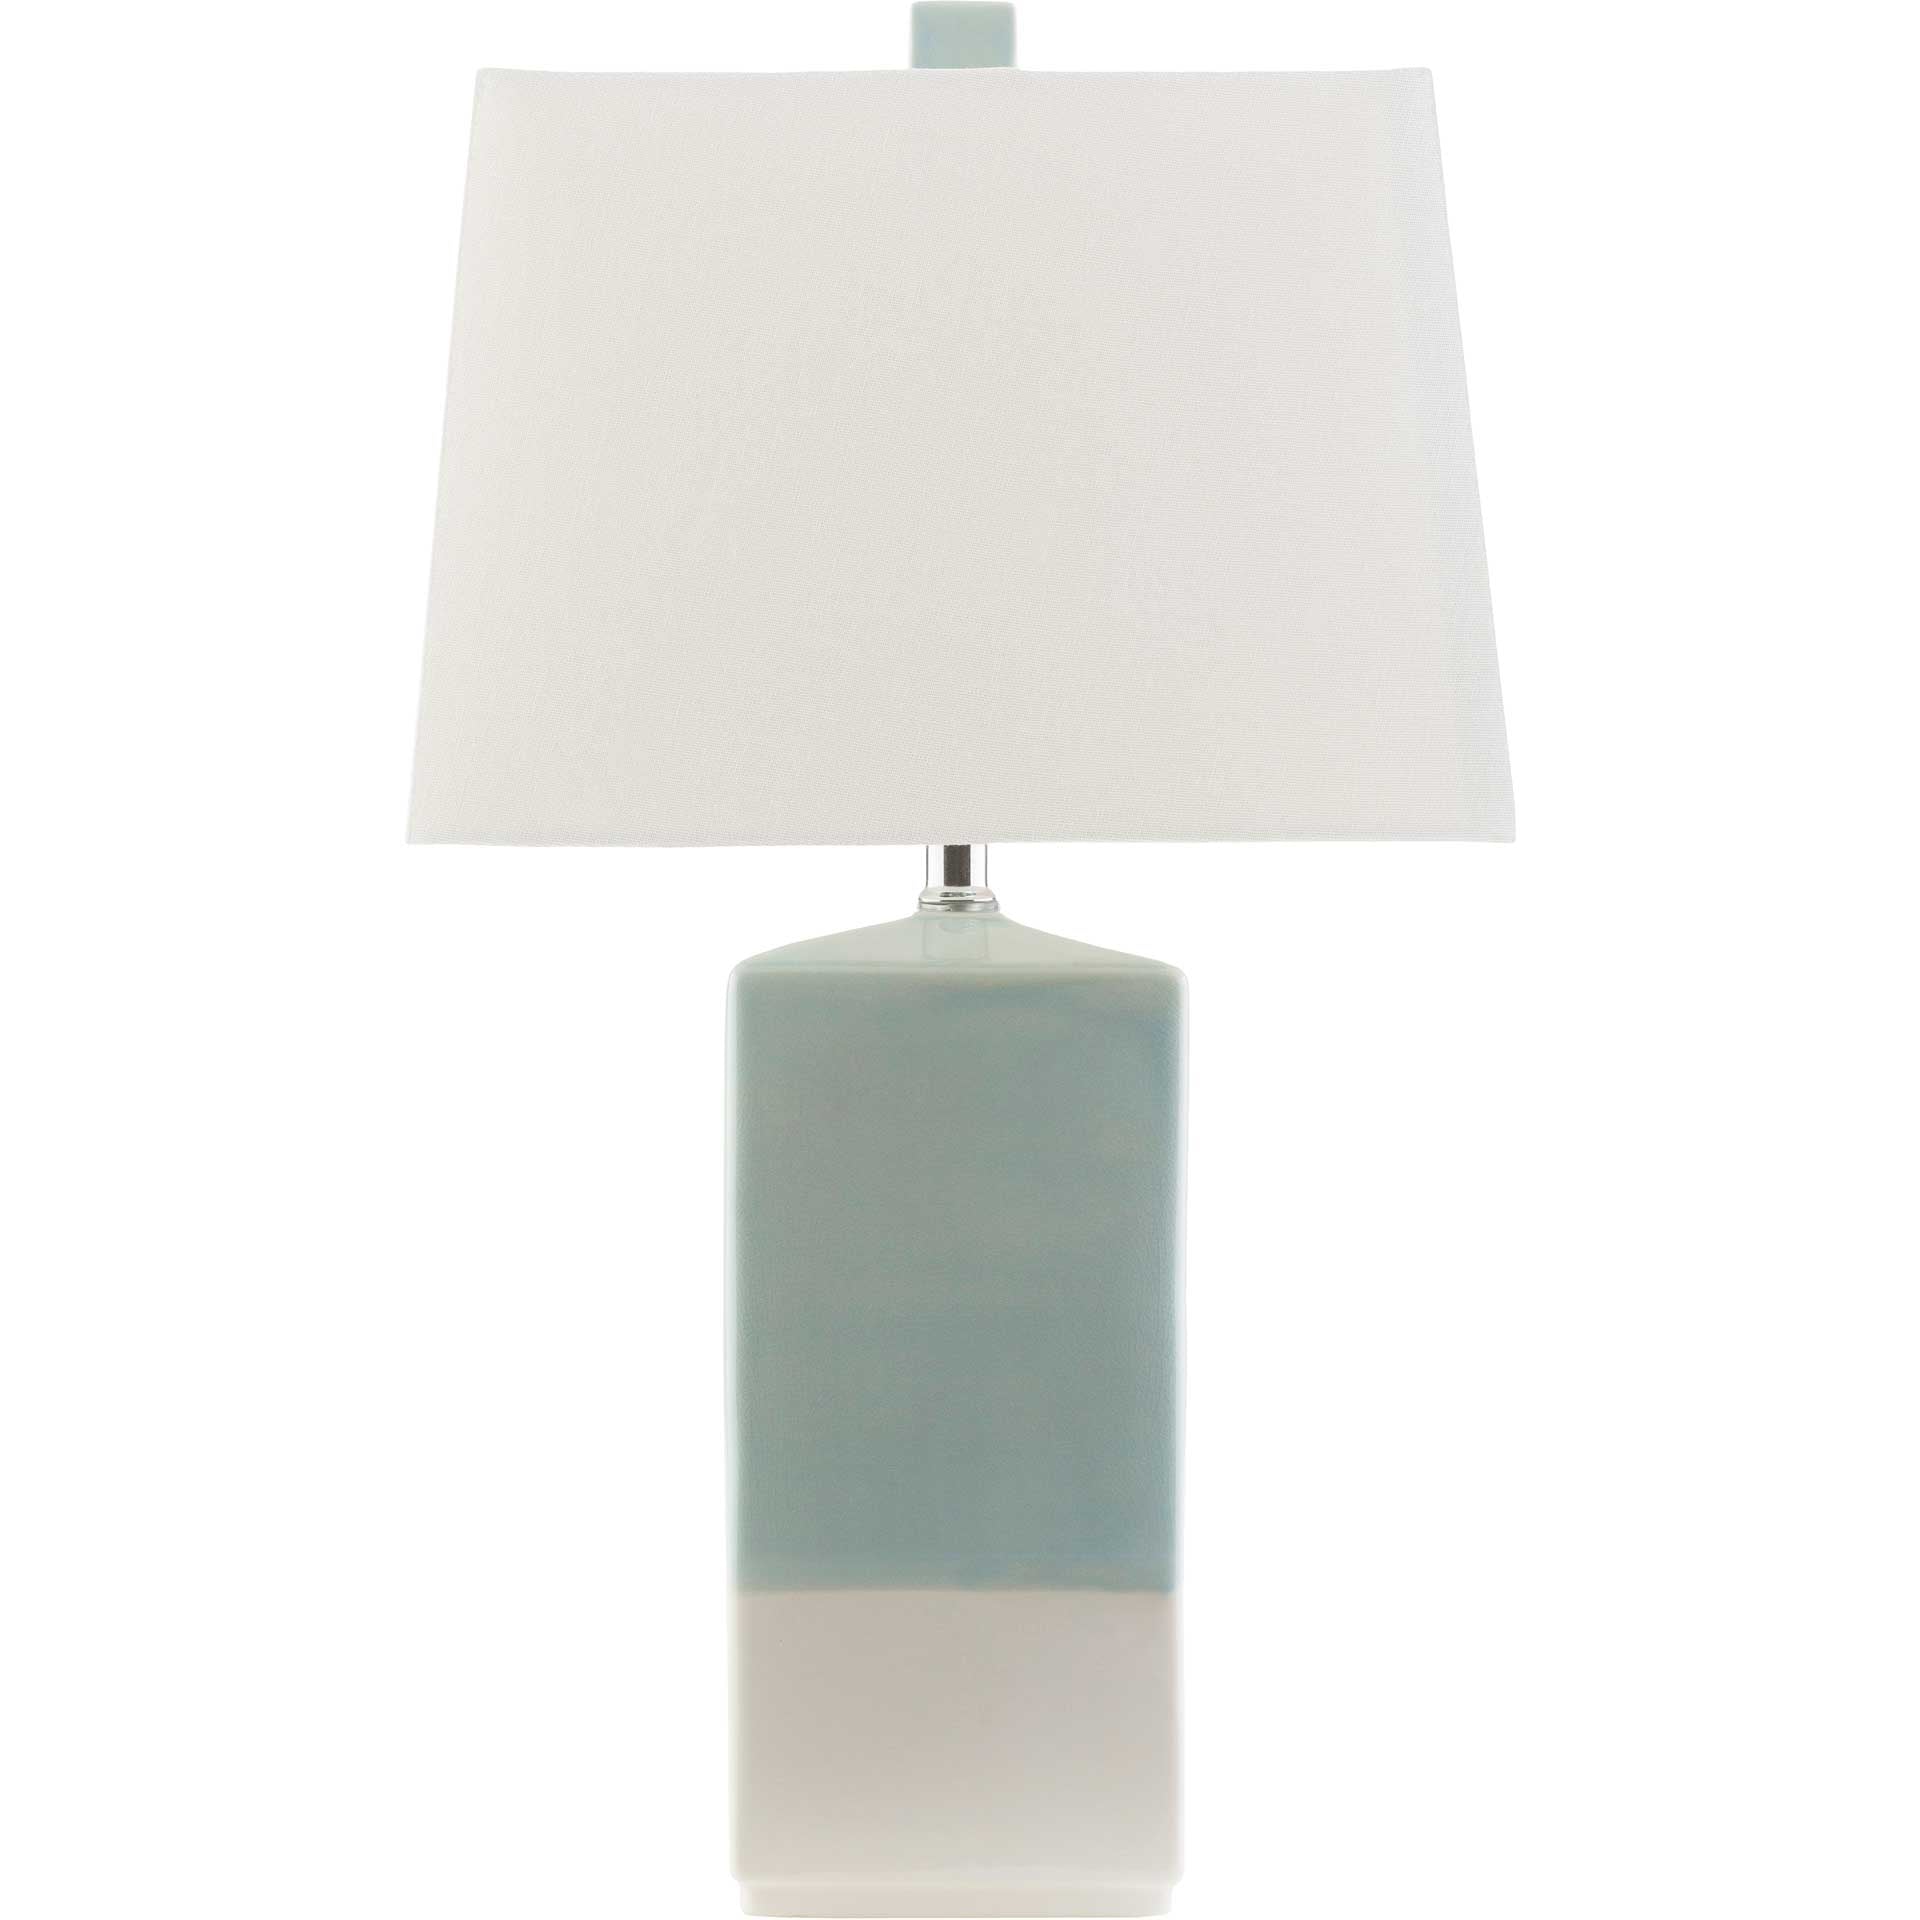 Malva Table Lamp Aqua/Ivory/Cream